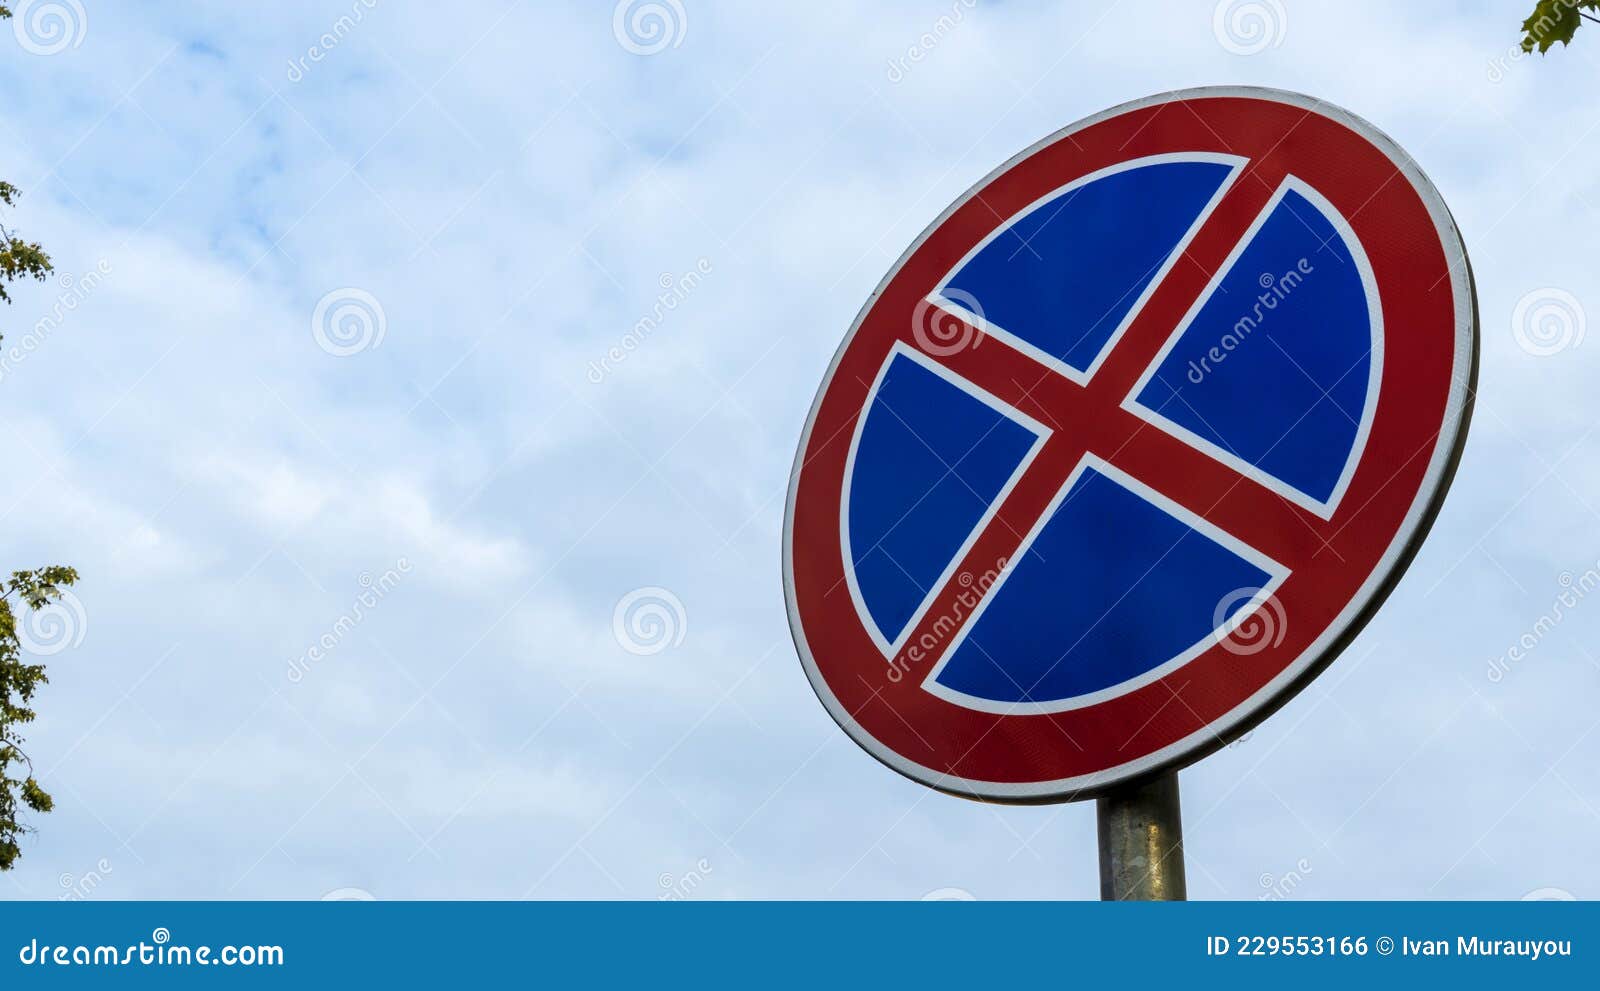 Chào mừng bạn đến với hình ảnh biển báo đường. Bức ảnh này sẽ giúp bạn hiểu rõ hơn về các biển báo giao thông và đảm bảo an toàn khi tham gia giao thông đường bộ. Hãy cùng đón xem nhé!